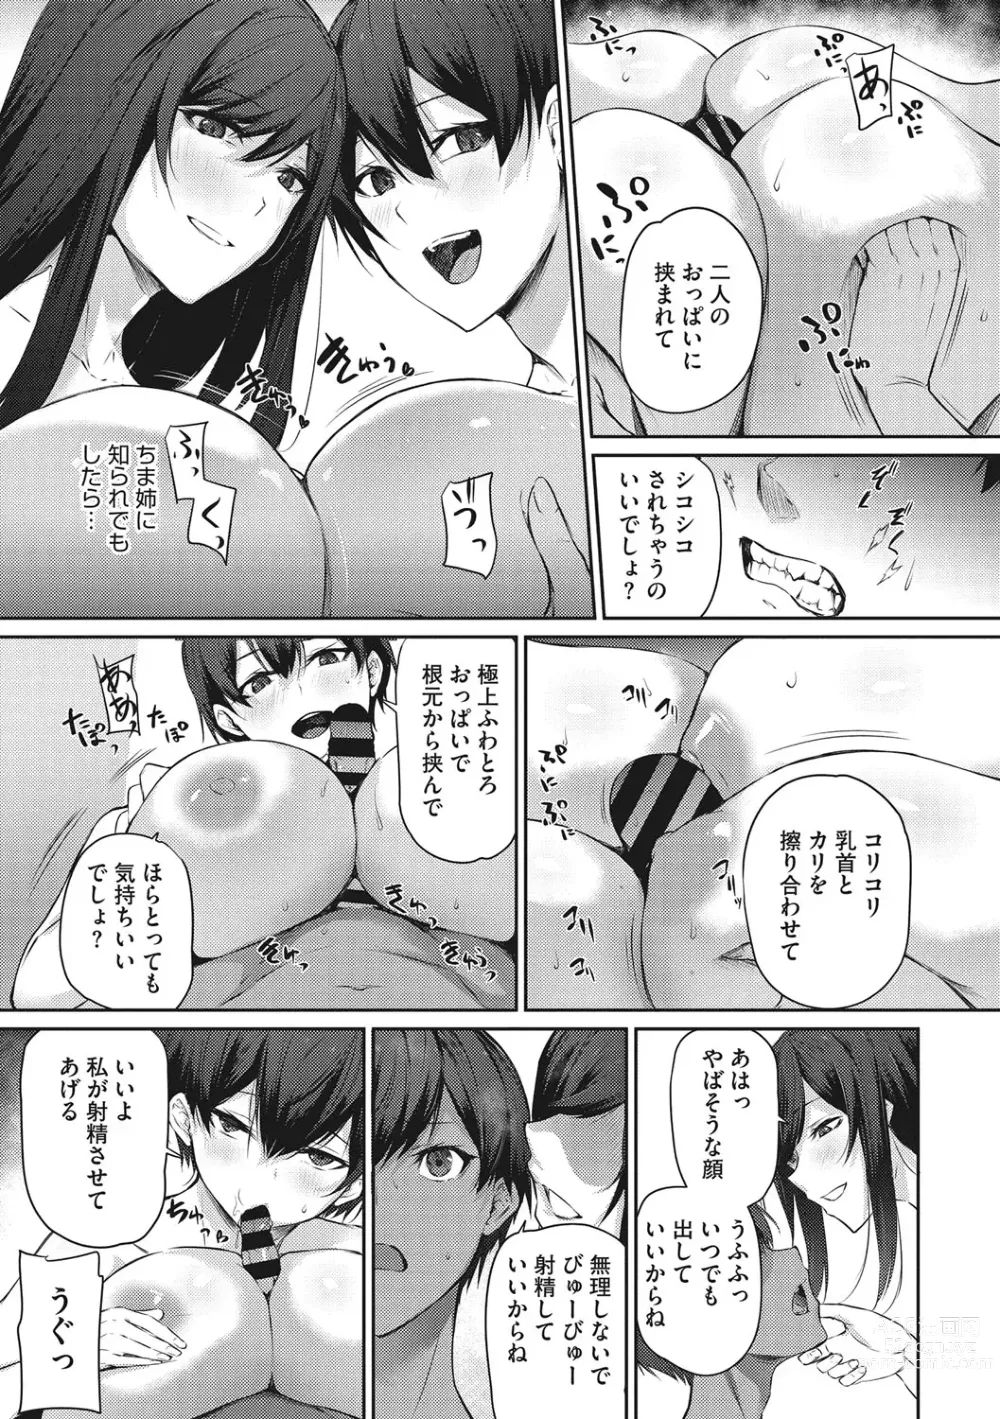 Page 14 of manga Karada Awase